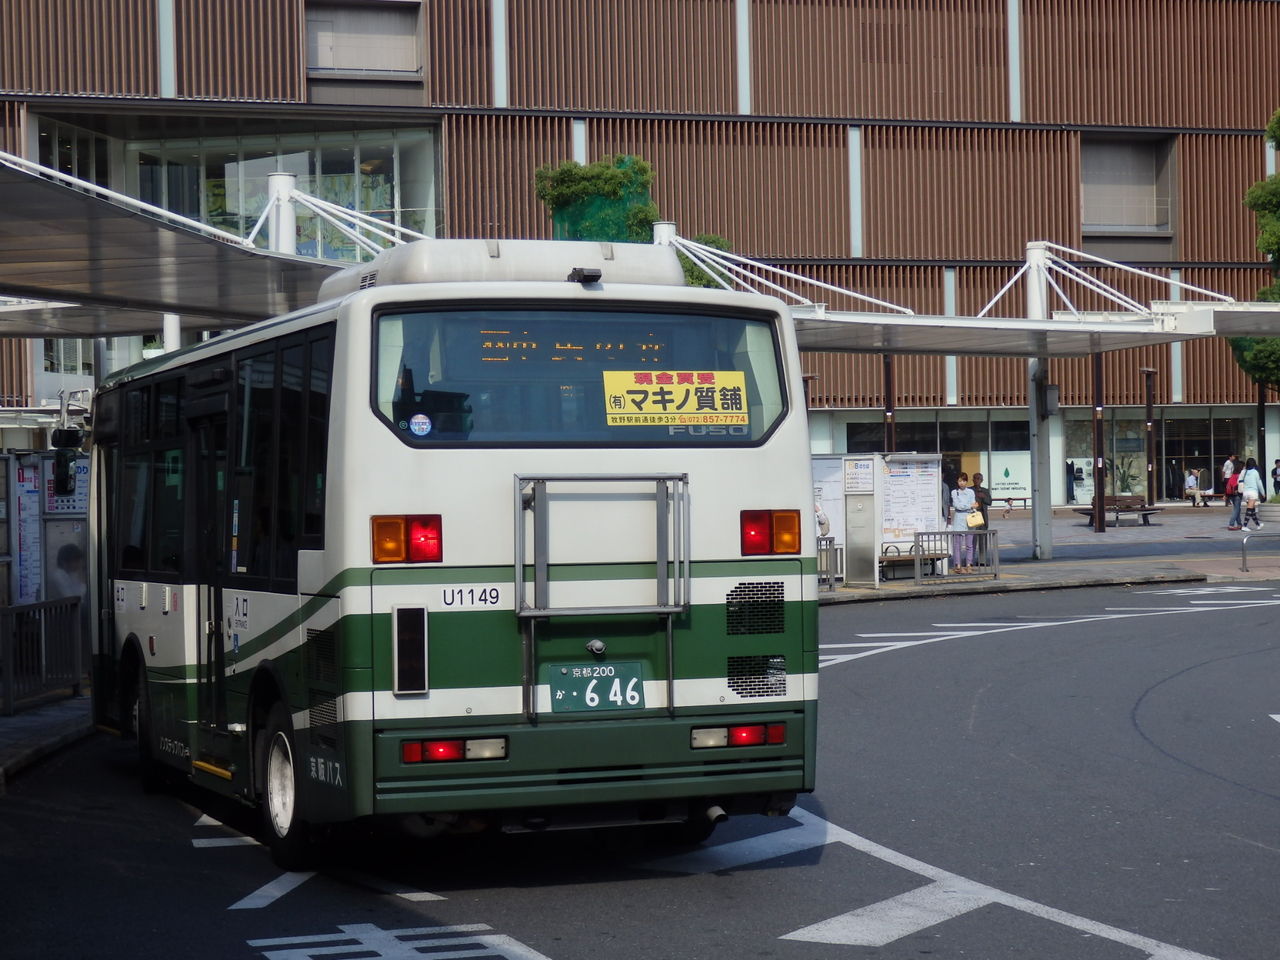 交野が原道草
	  京阪バス　緑のエアロミディ
	コメント